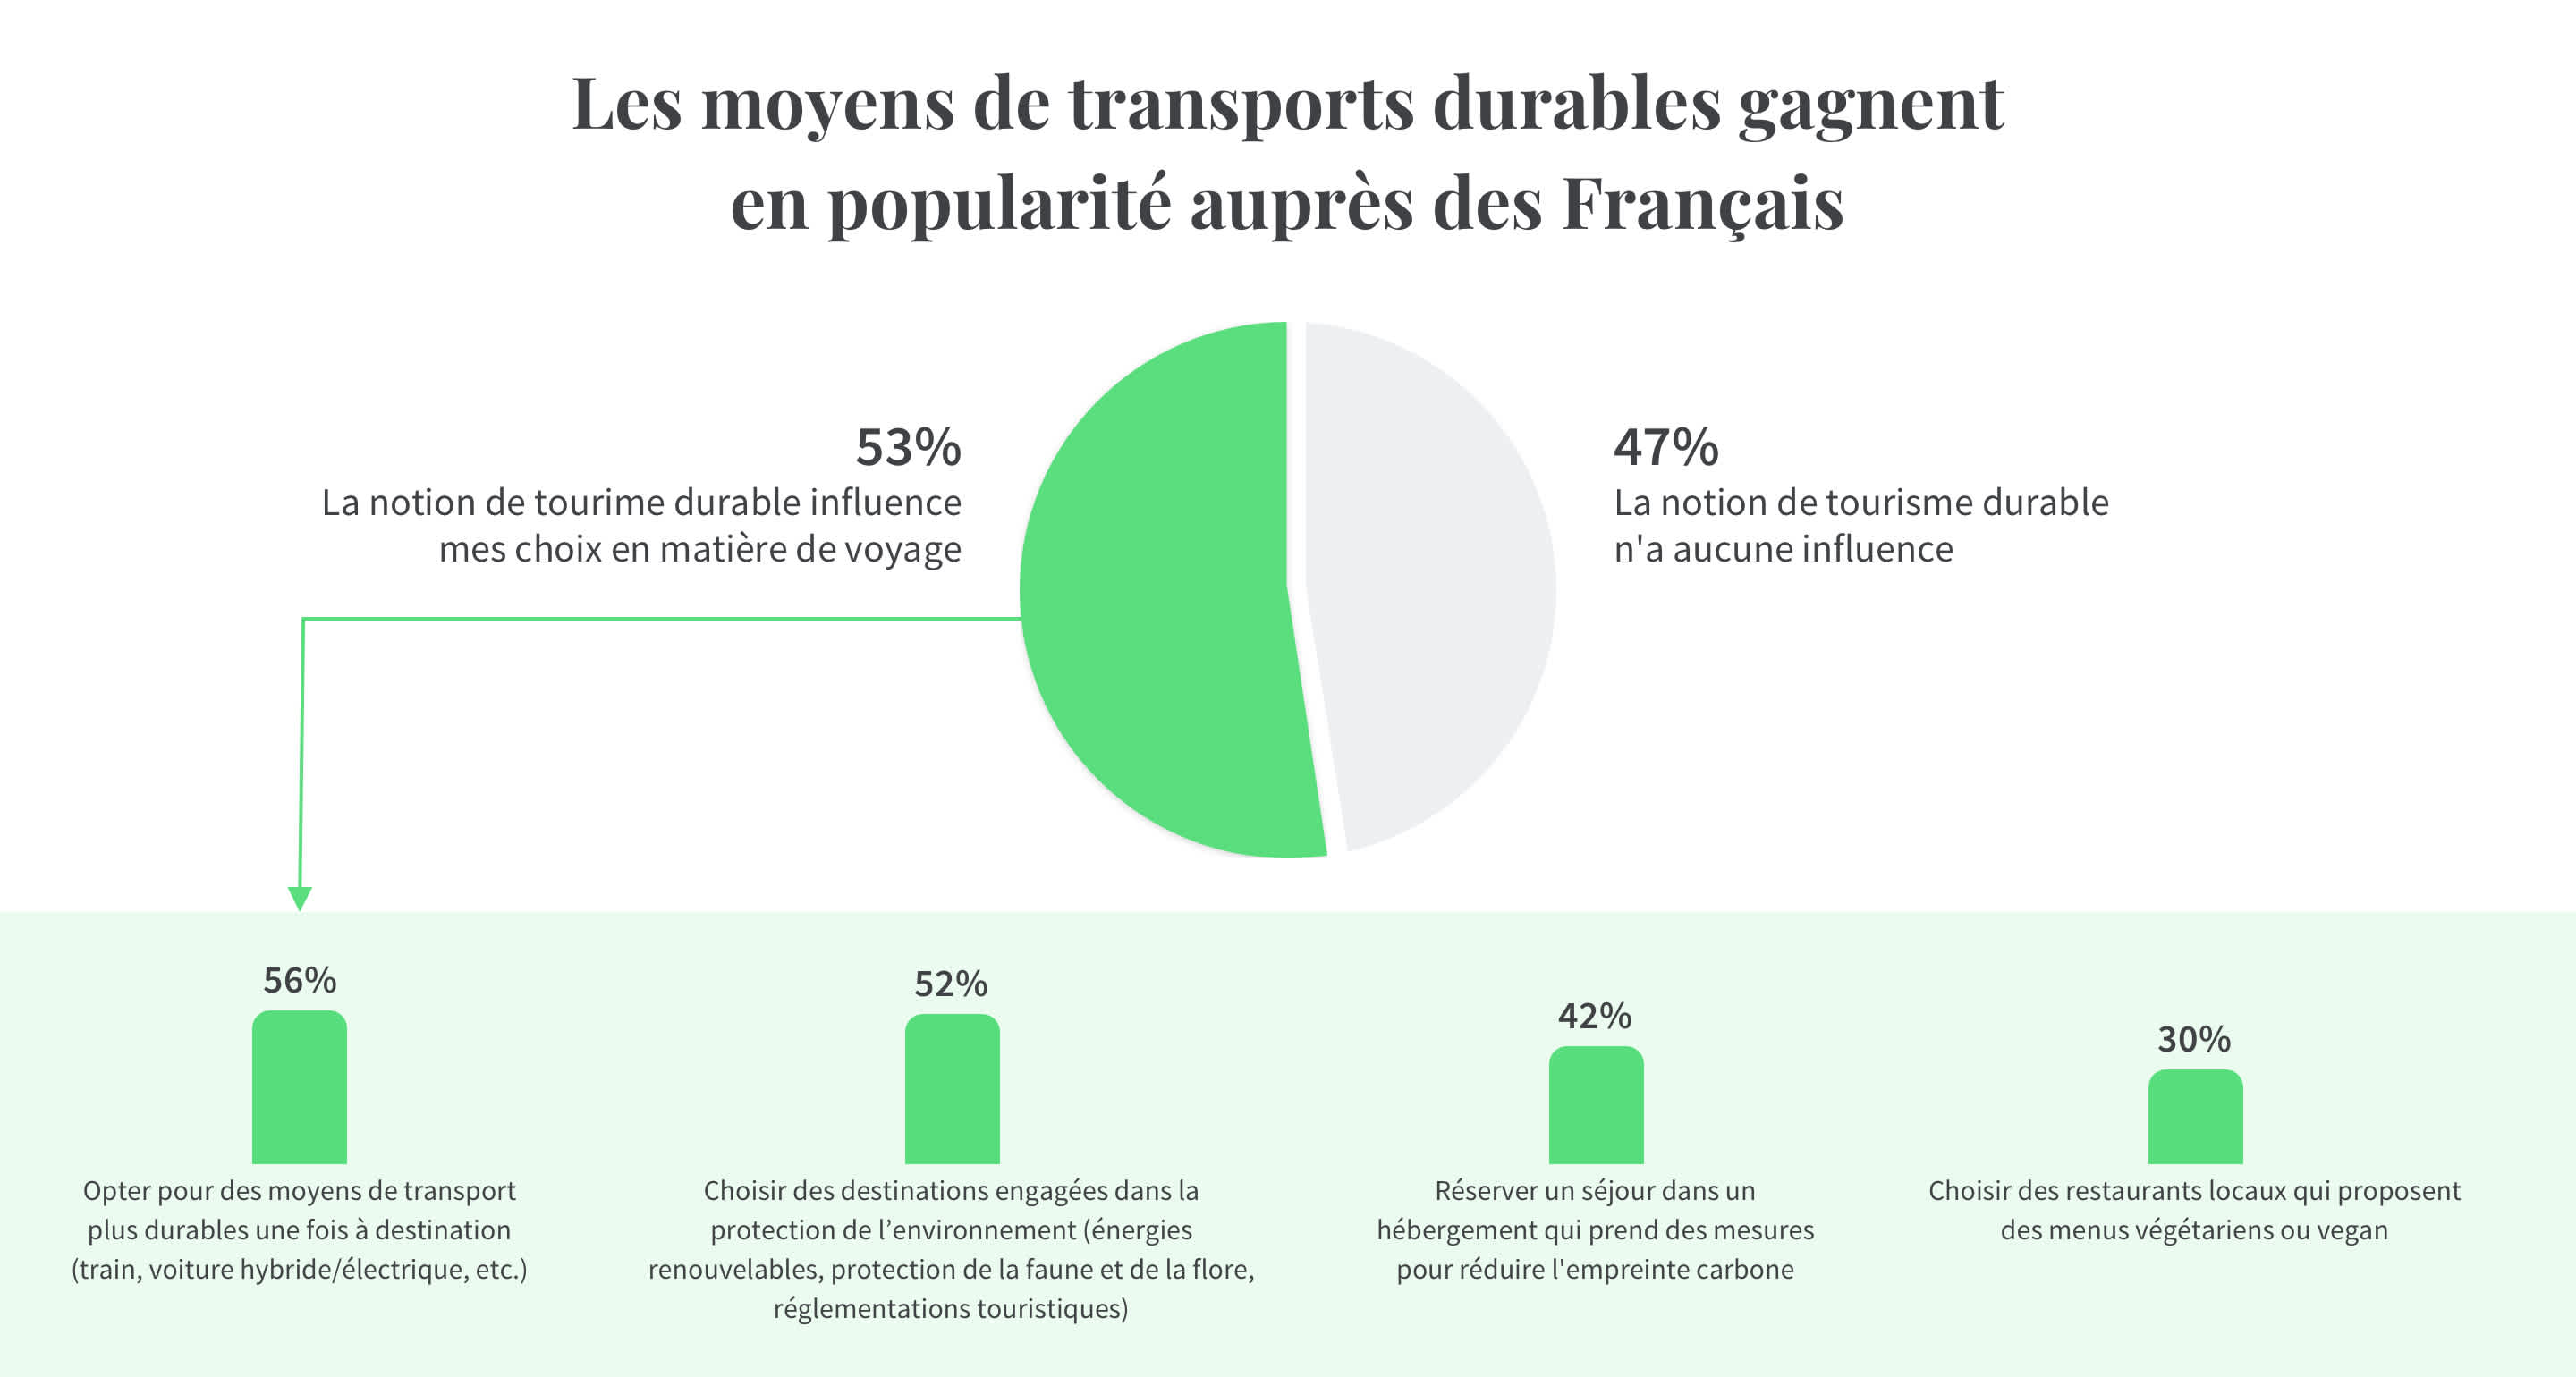 Les moyens de transports durables gagnent en popularité auprès des Français